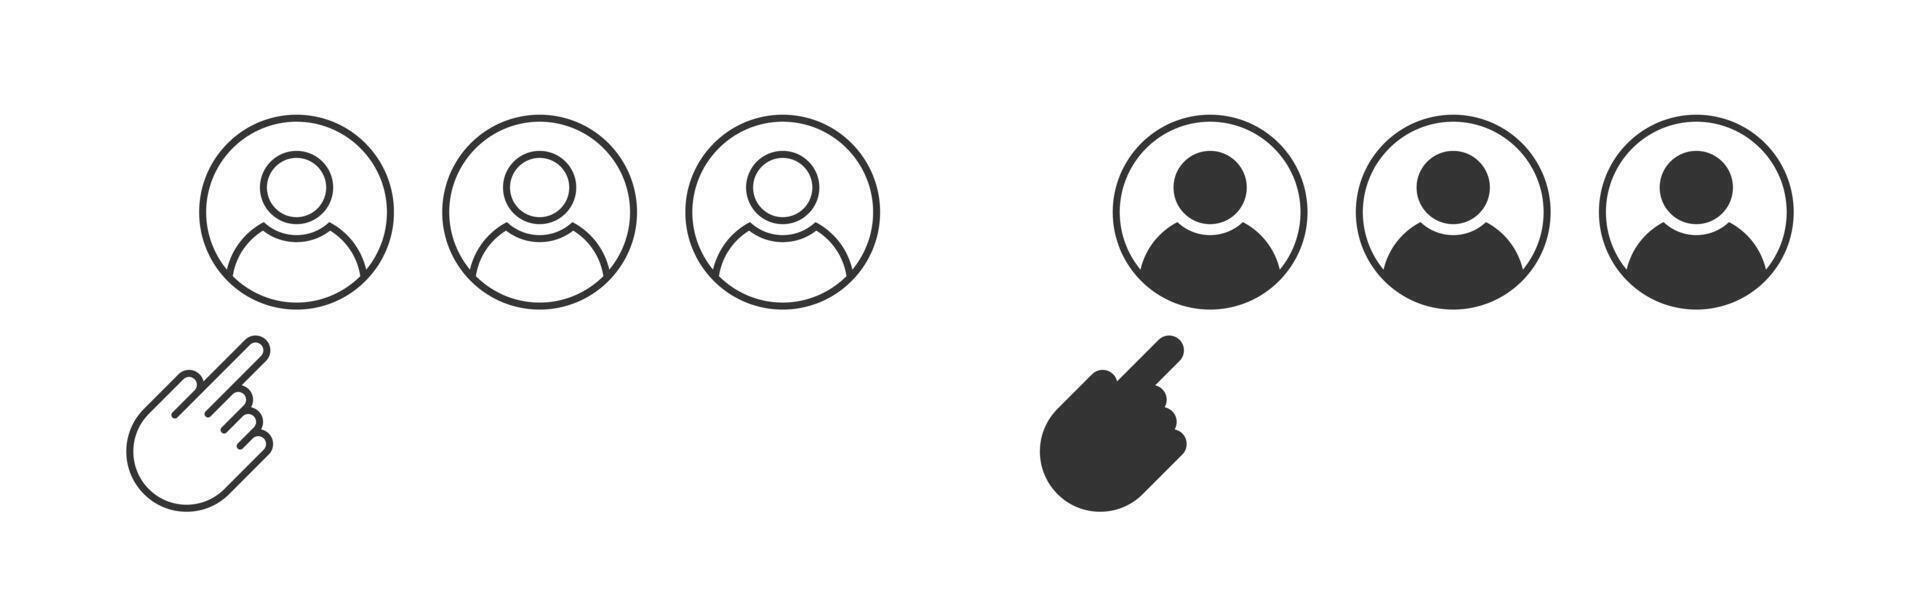 main montrer du doigt sur une la personne icône. choix Personnel icône. personnel la gestion concept. vecteur illustration.